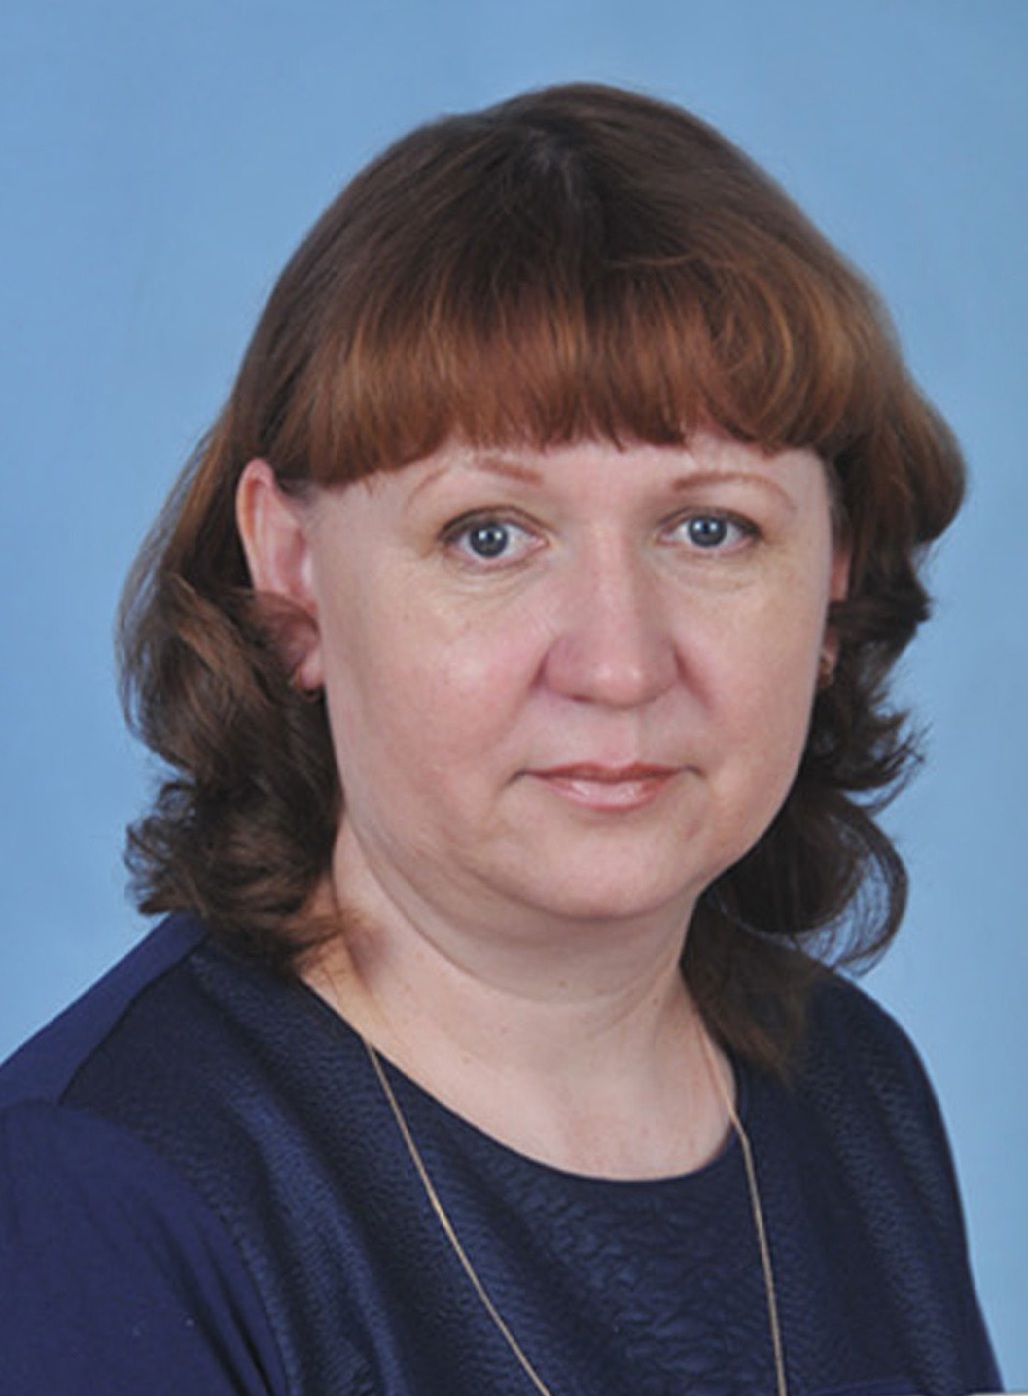 Ярославцева Елена Павловна.